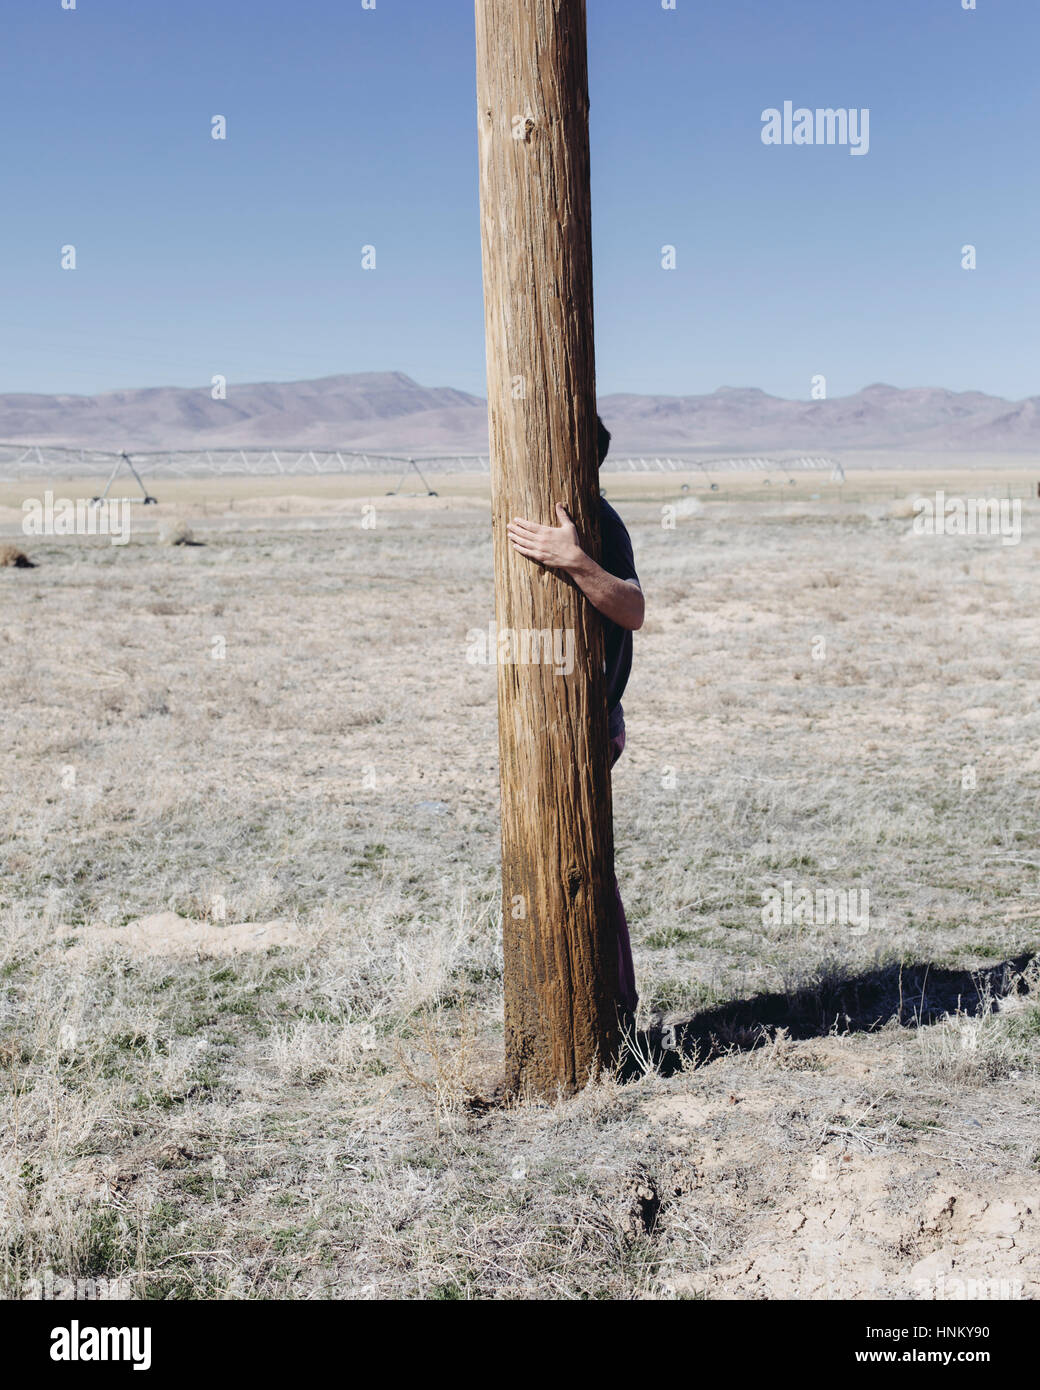 L'homme avec ses bras autour d'un poteau en bois utliities, accroché à l'étreindre ou poster dans un paysage ouvert. Banque D'Images